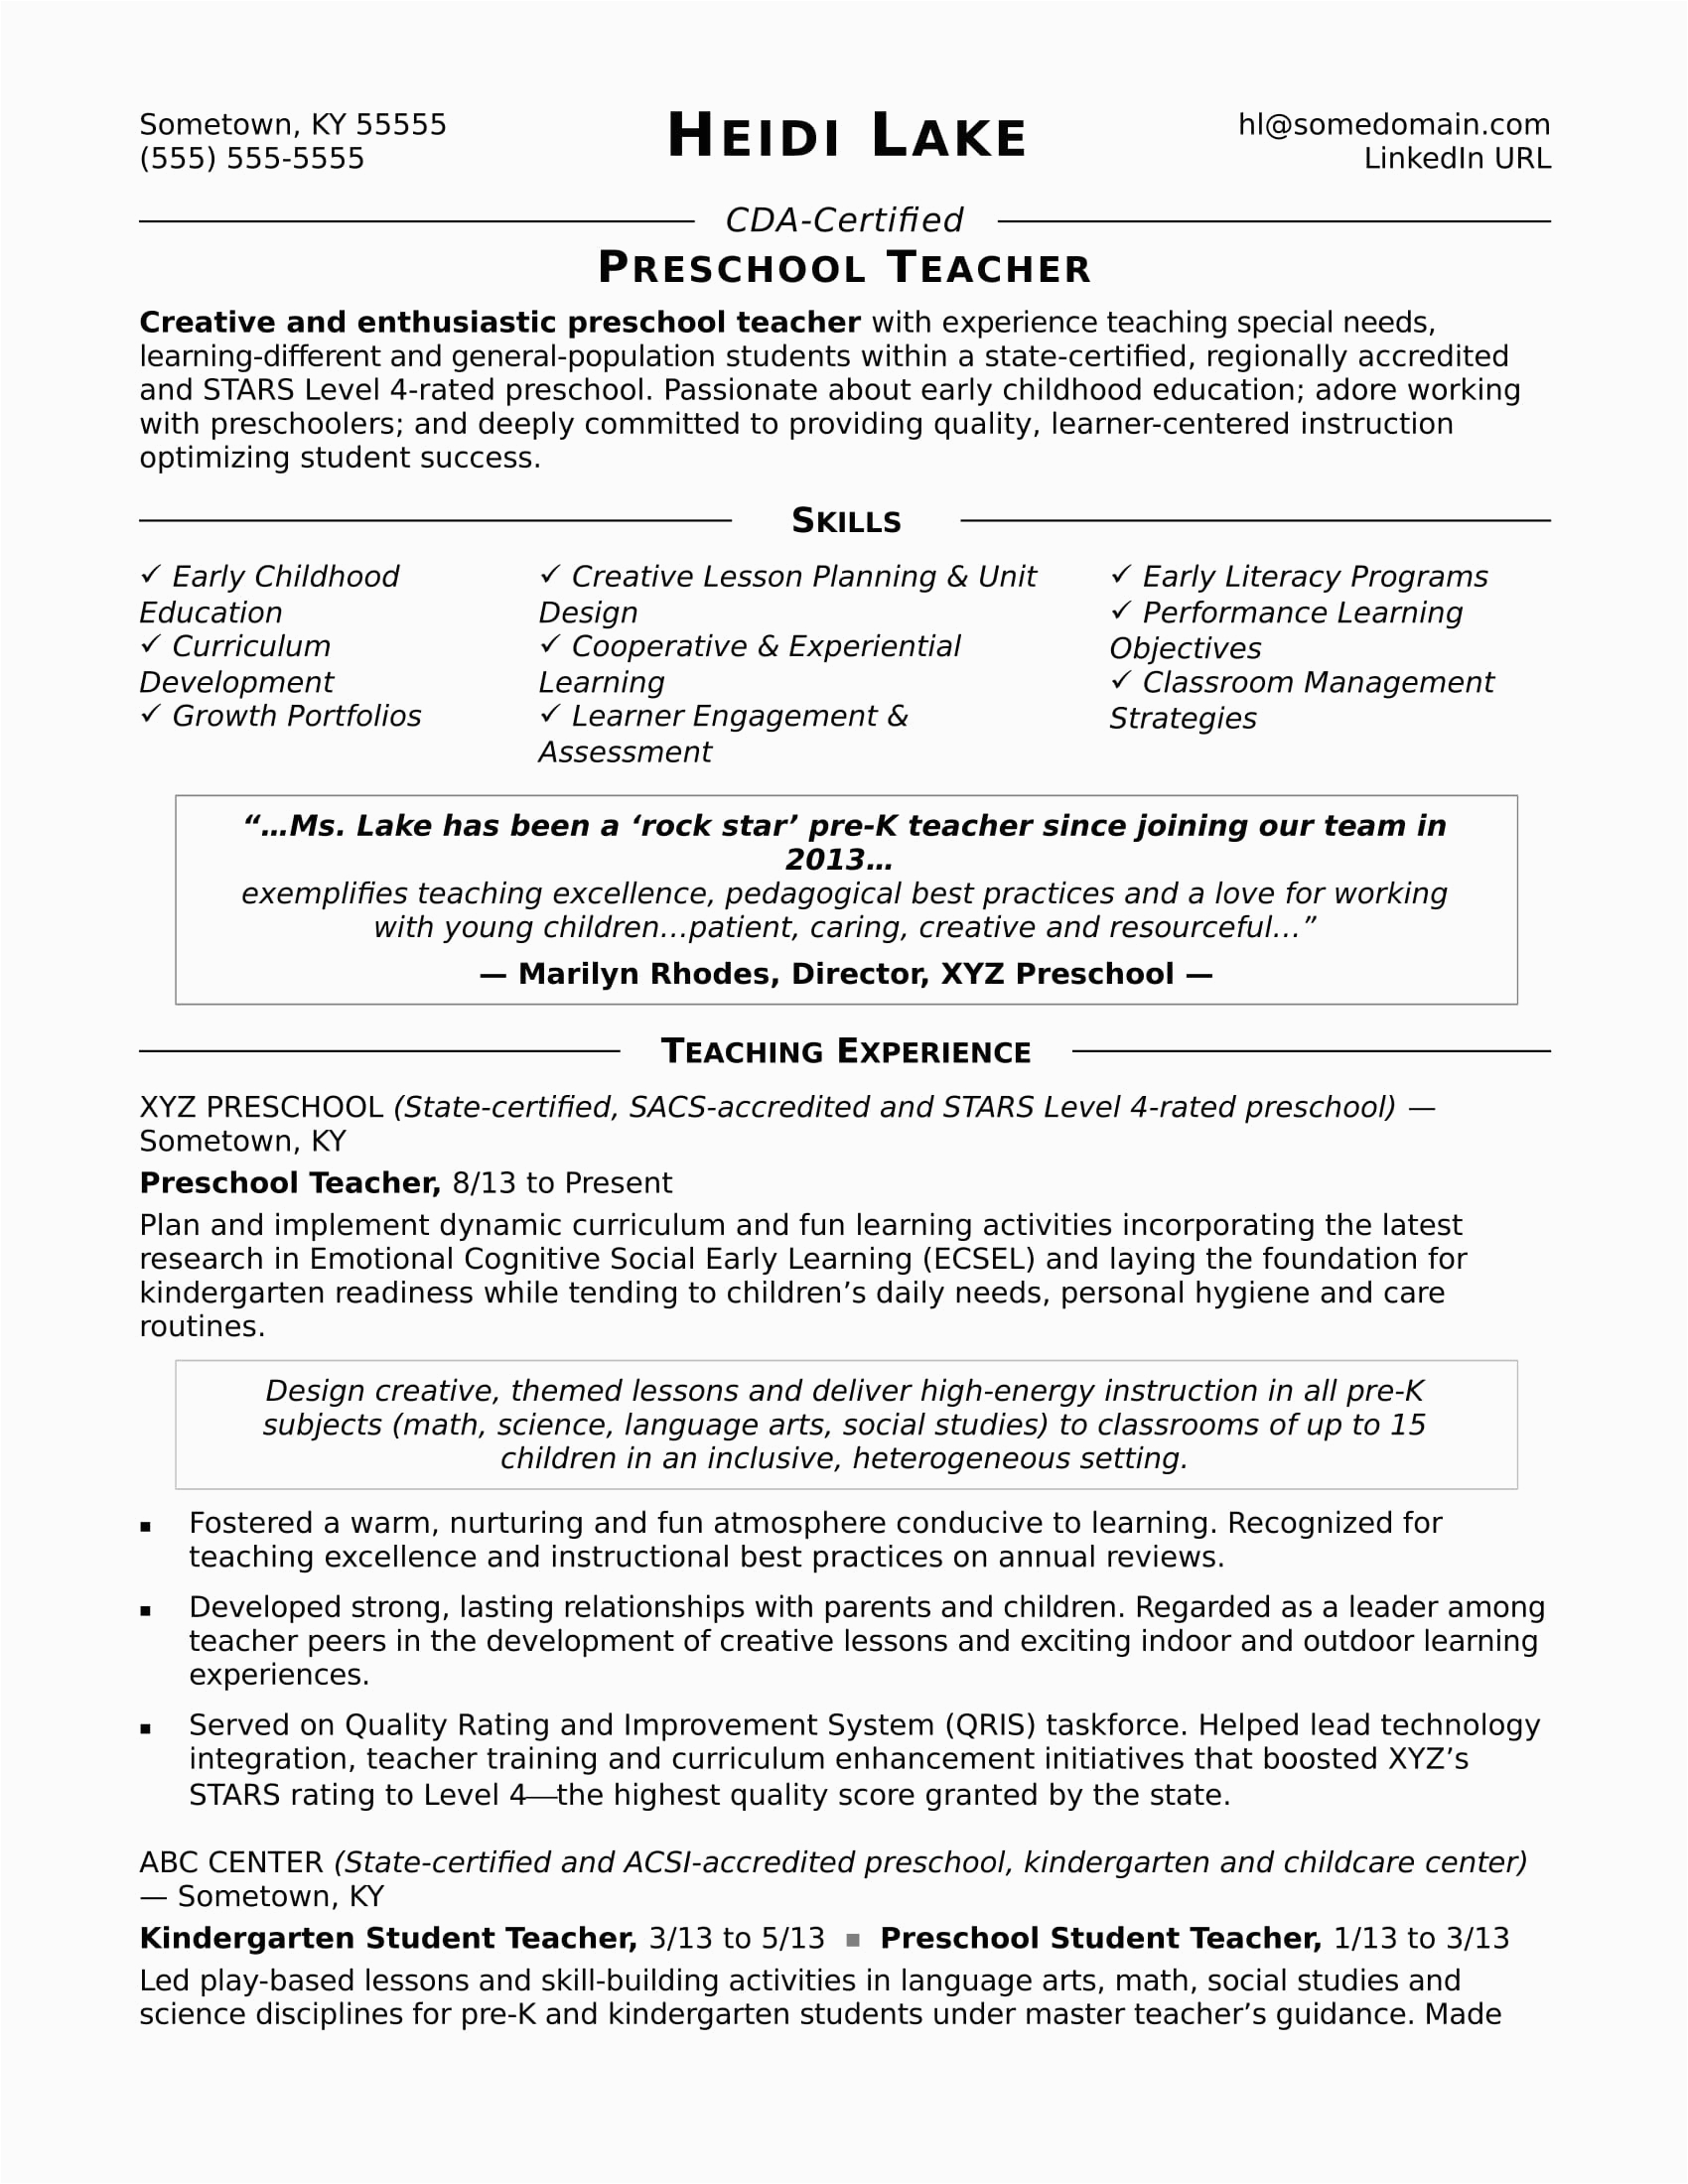 Sample Resume for Preschool Teacher assistant Preschool Teacher Resume Sample